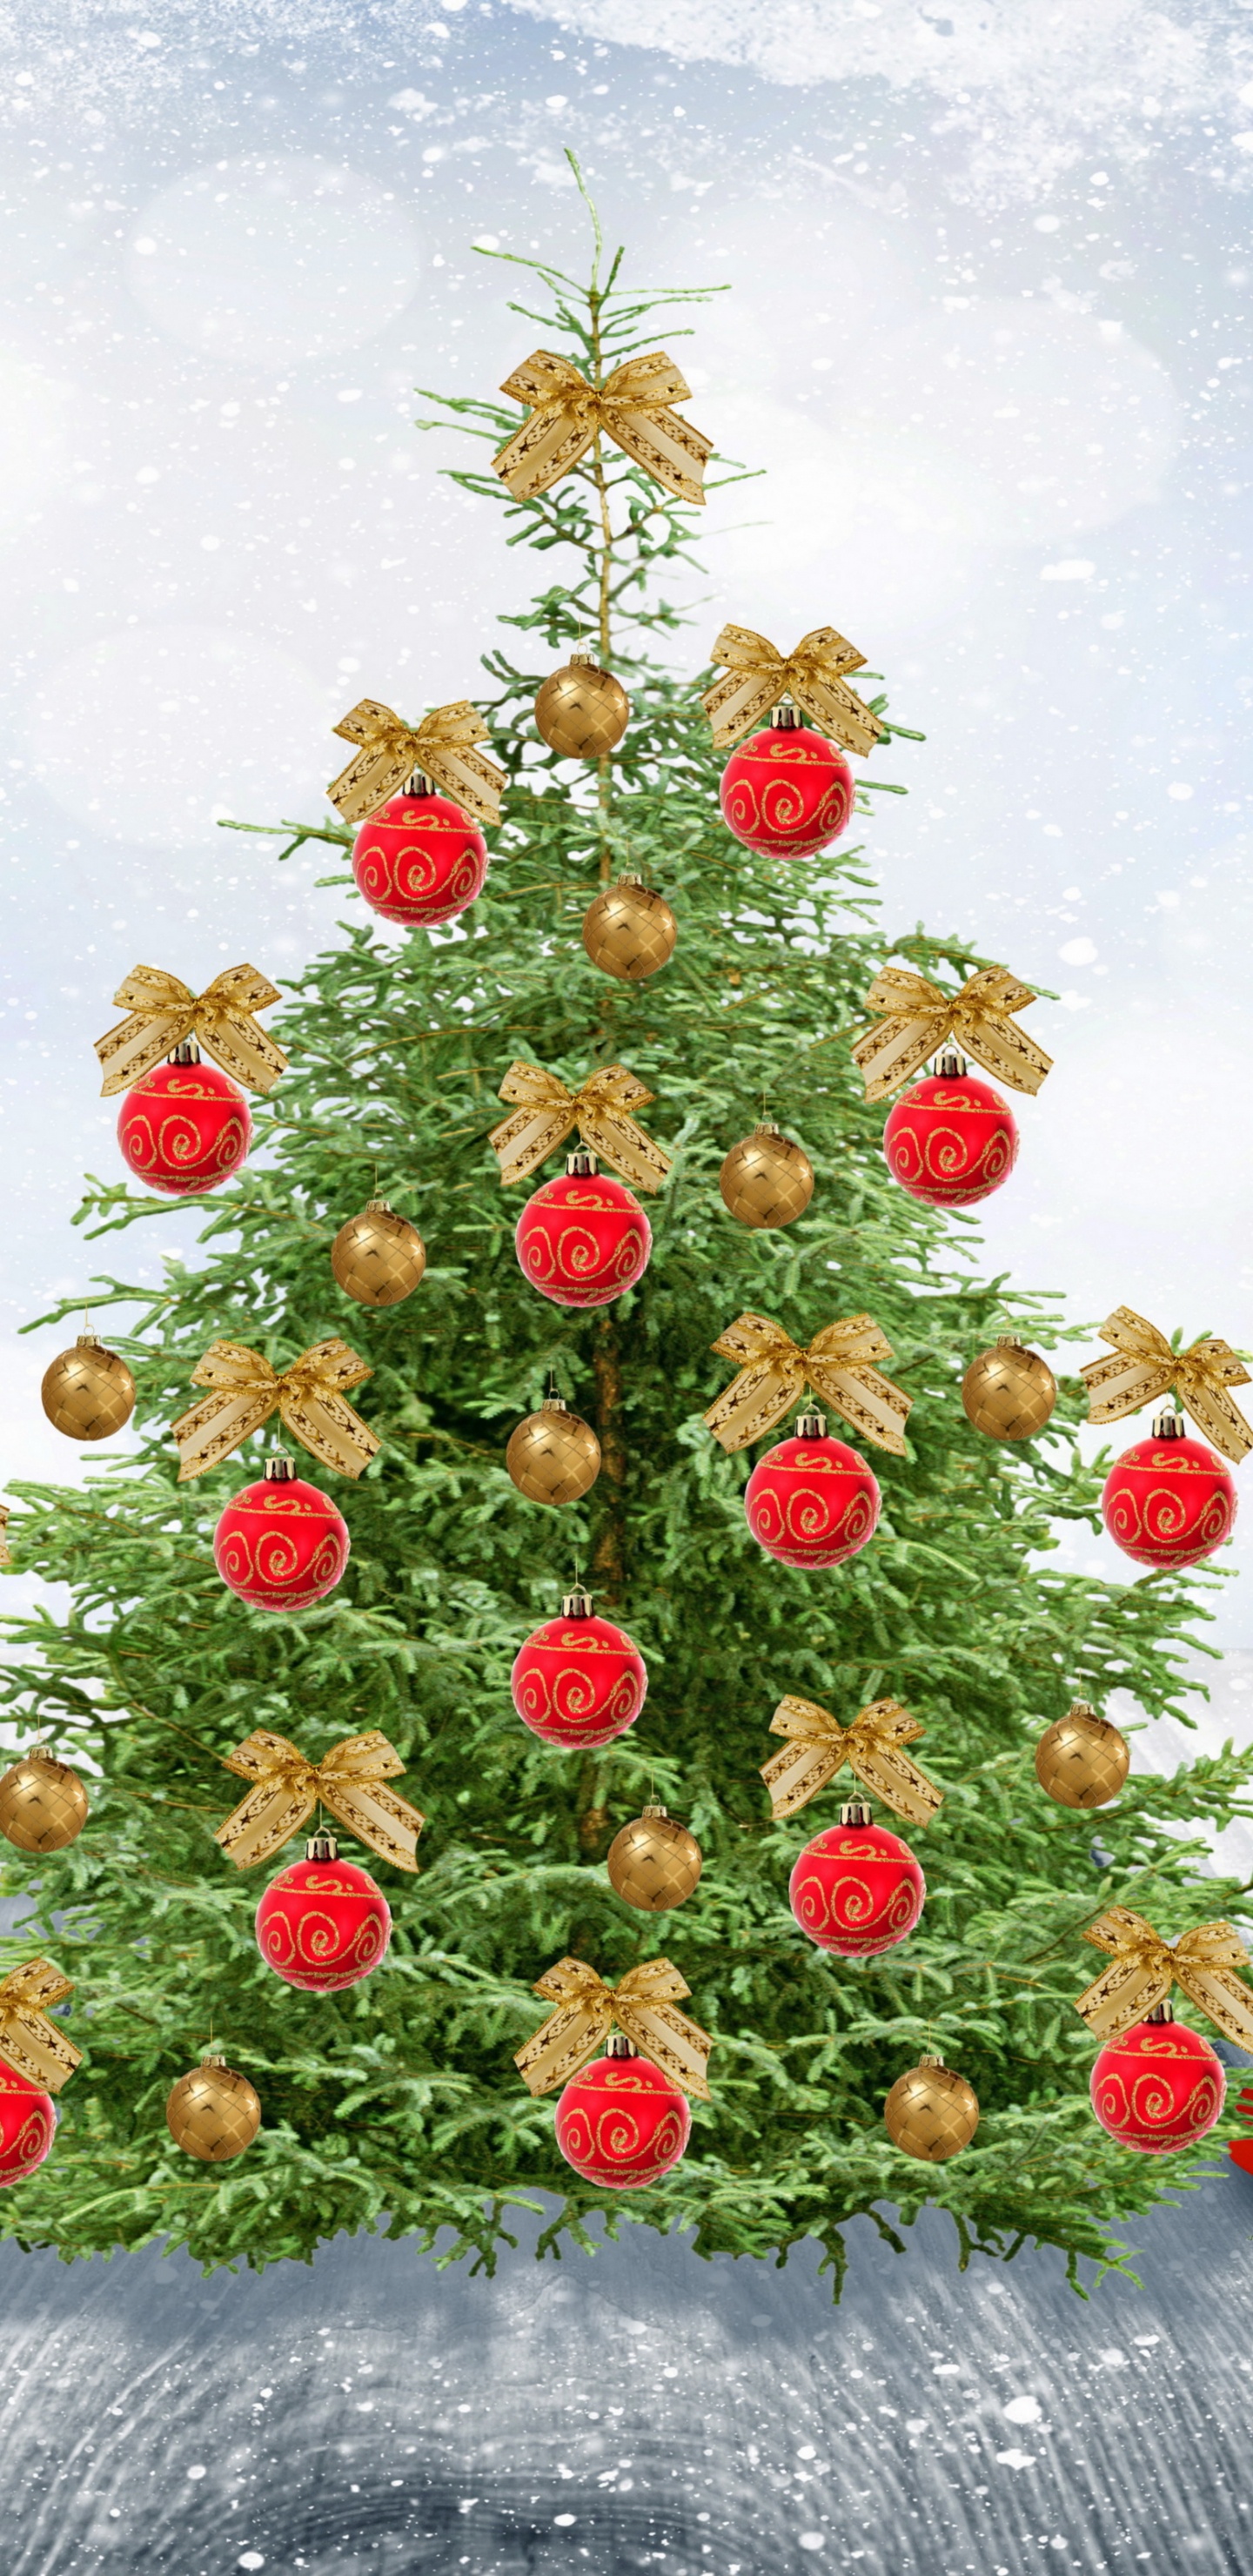 新的一年, 圣诞节那天, 圣诞老人, 圣诞树, 圣诞装饰 壁纸 1440x2960 允许